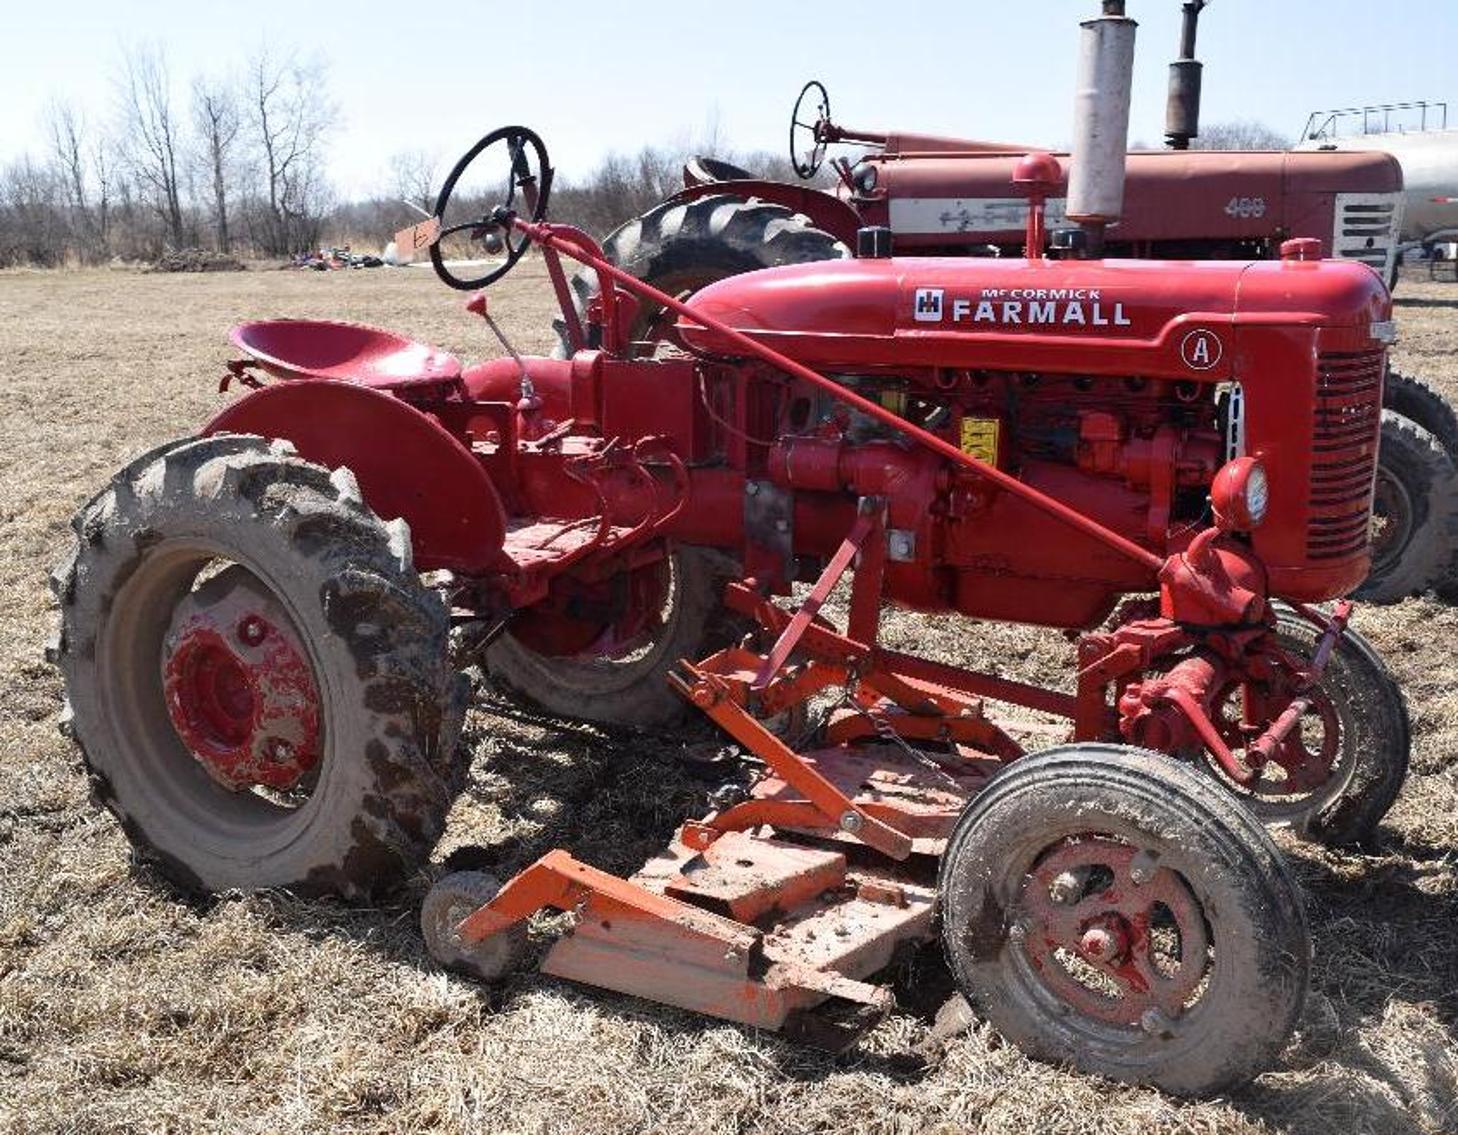 (11) Tractors & Farm Equipment